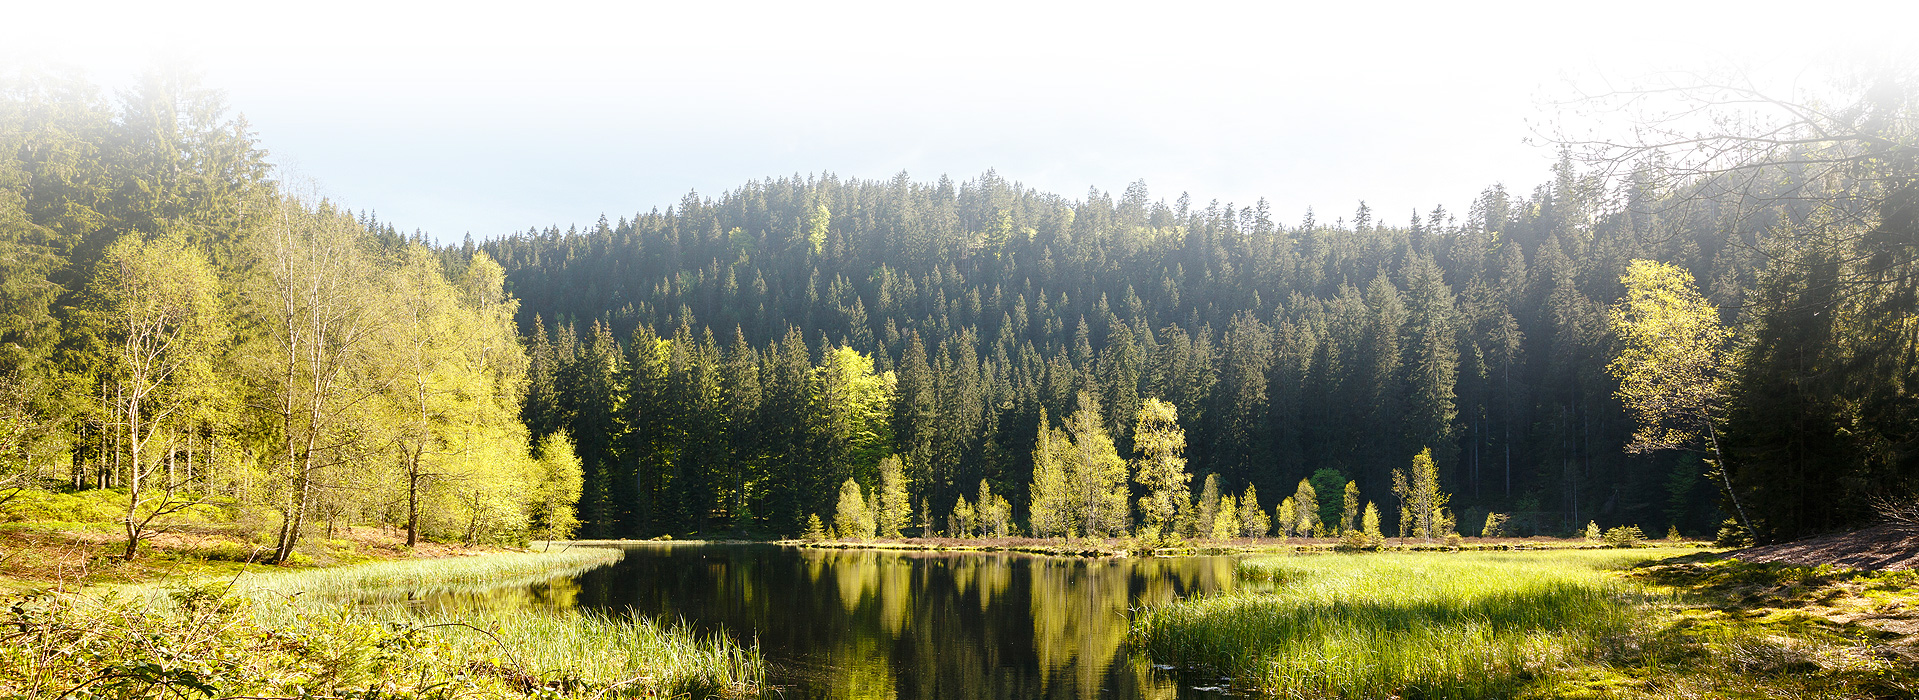 Abgebildet ist der Buhlbachsee. An den Bildrändern ist der Uferbereich zu sehen. Den Hintergrund bildet ein mit Nadelbäumen bewachsener Berg. Am Fuß des Berges liegt der Buhlbachsee. In der Mitte des Sees stehen einige Birken, welche auf schwimmenden Inseln wachsen.  